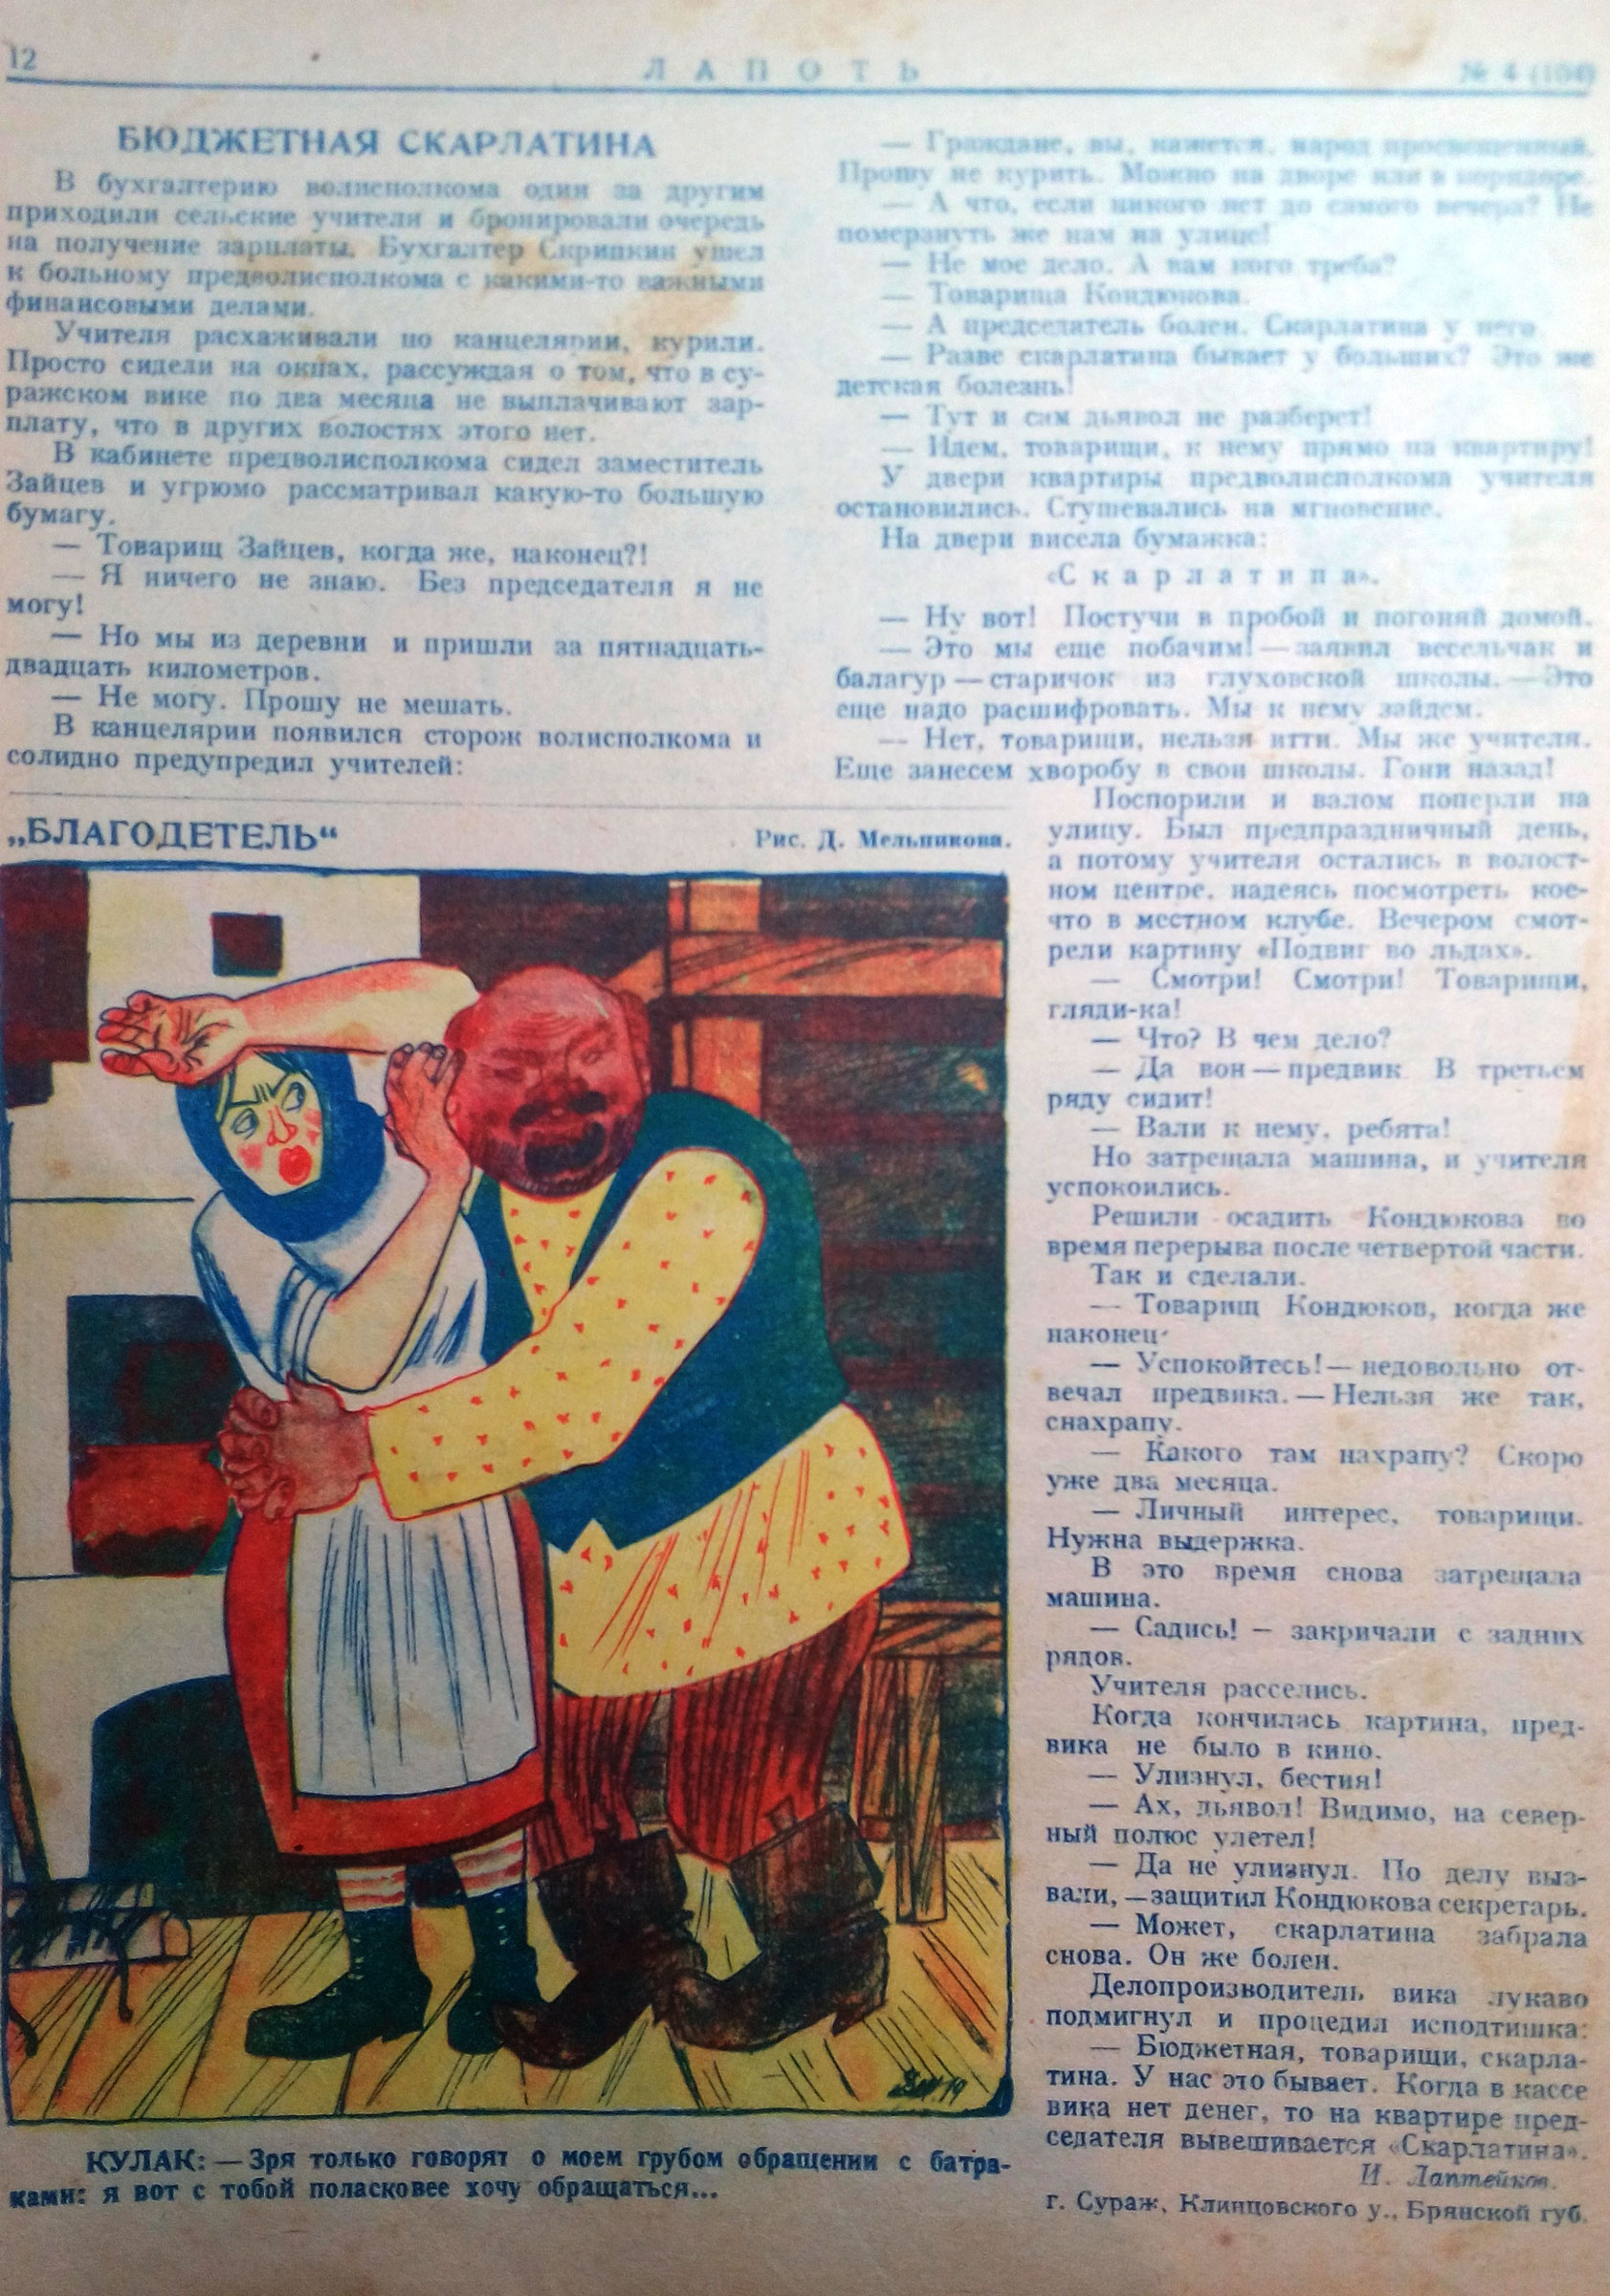 Публикации И. Лаптейкова в  журнале «Лапоть».